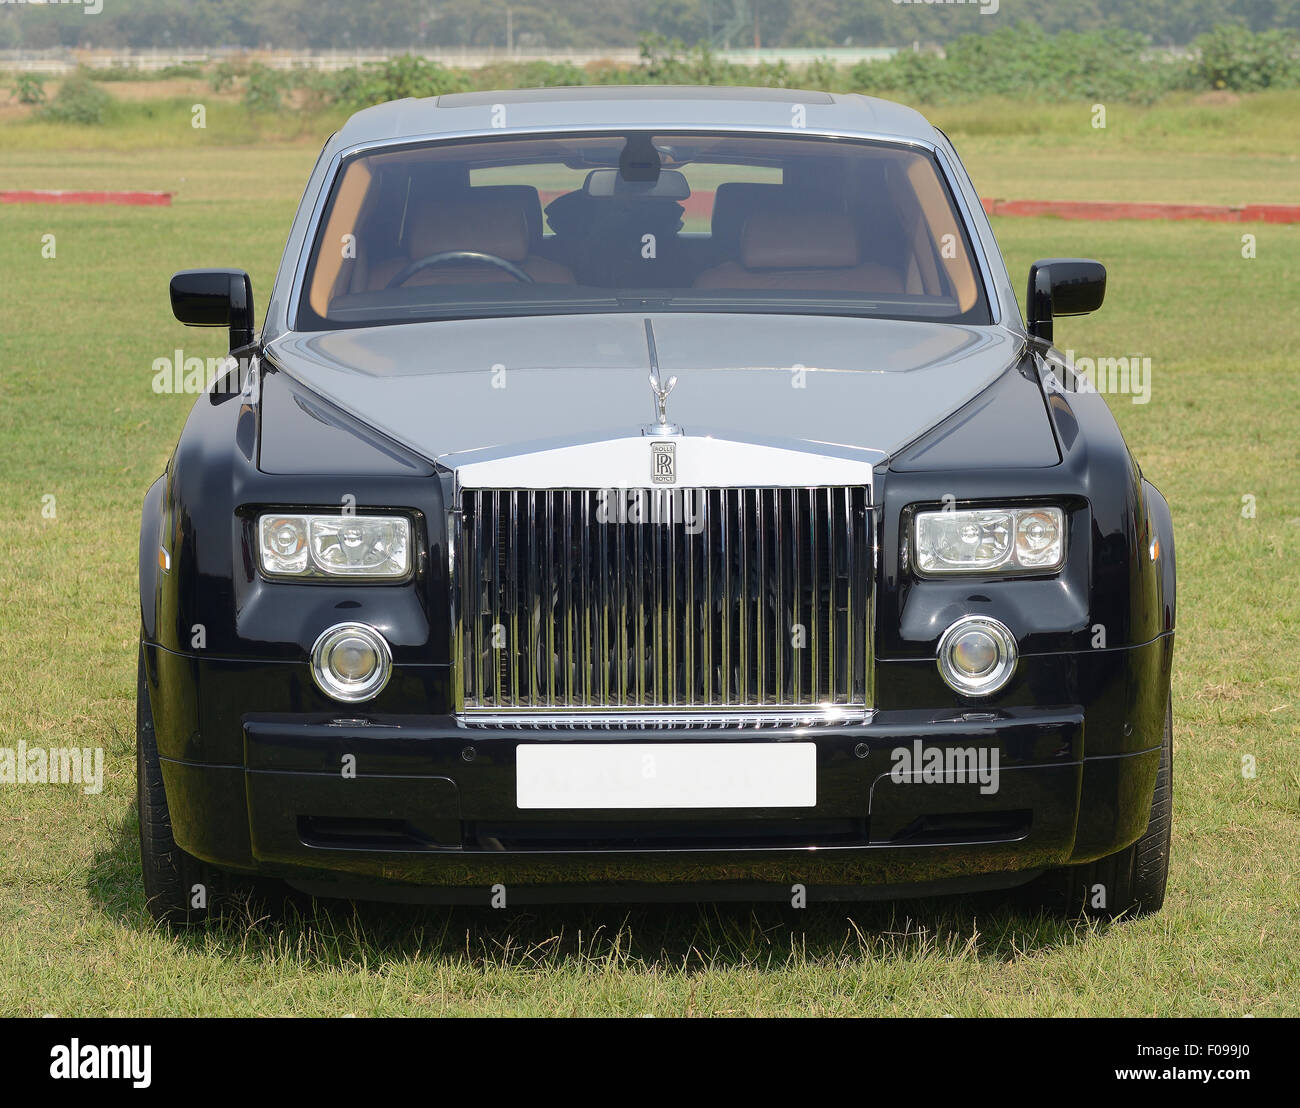 Bombay, India - January 26, 2013: Rolls Royce Phantom at Bombay Super Car Show Stock Photo